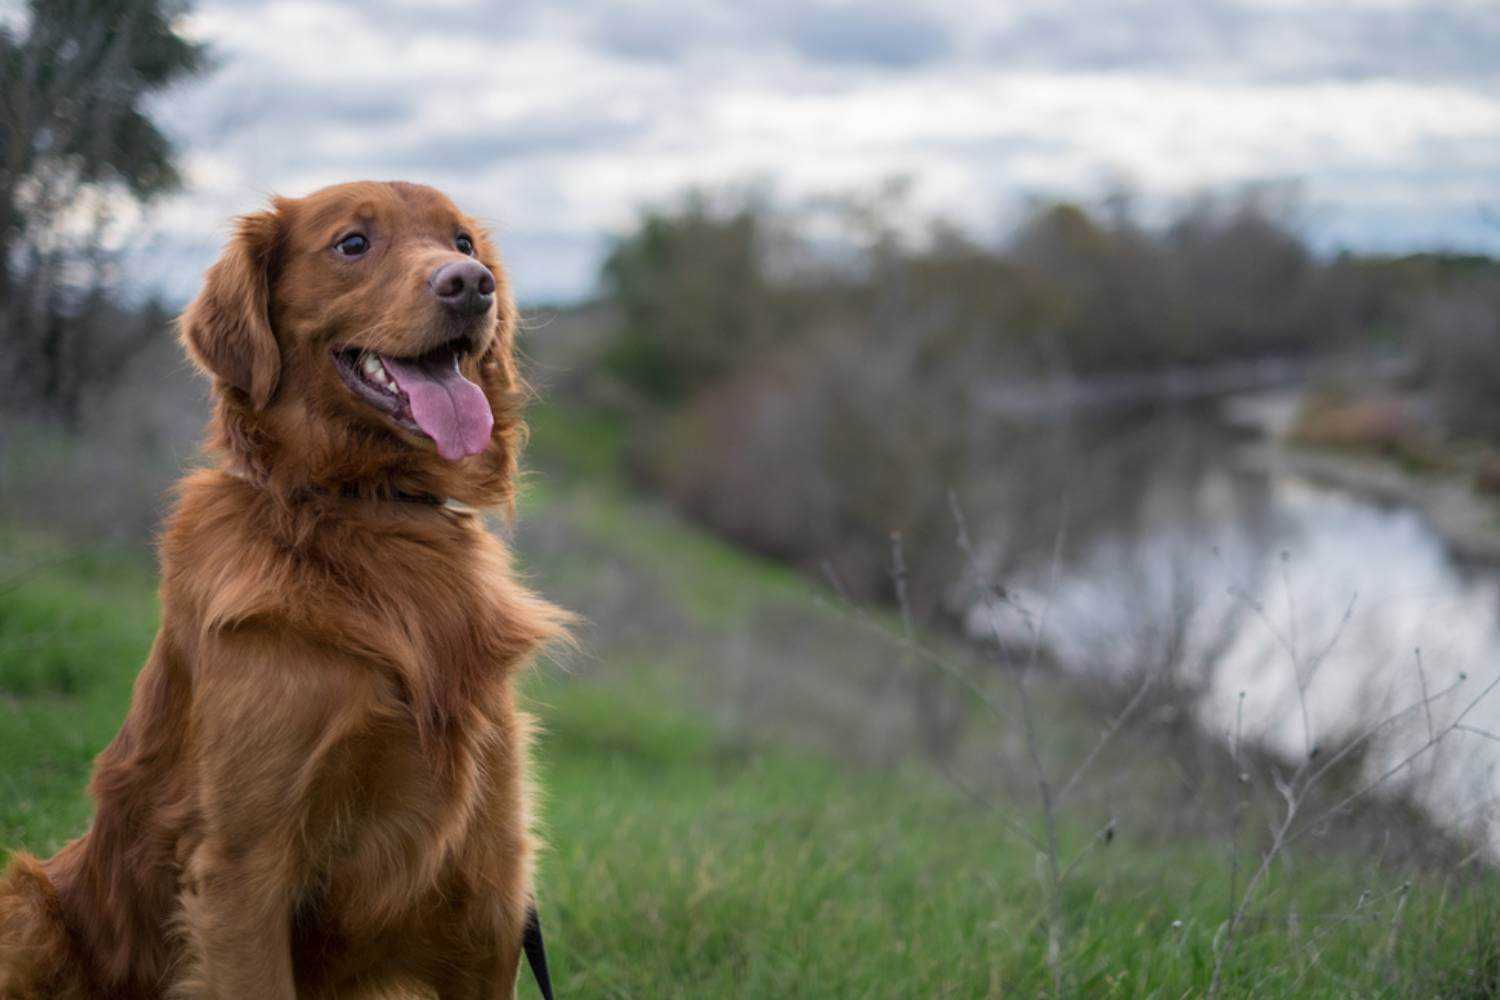 Sacramento Dog Smiling Near River